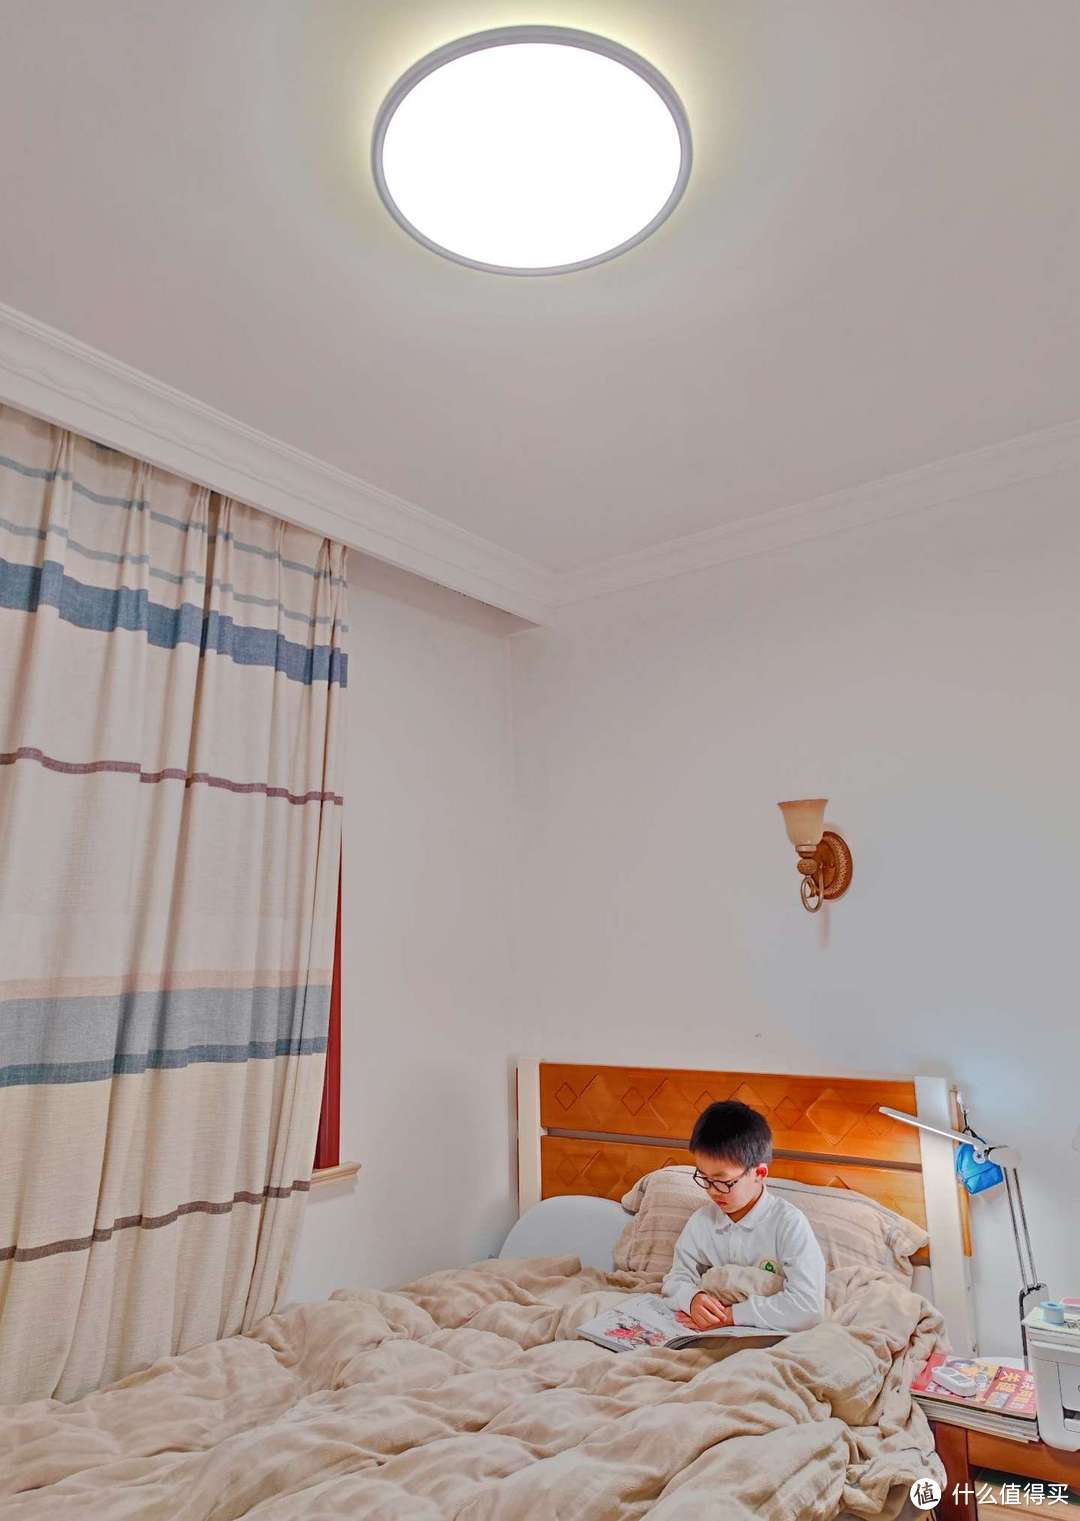 孩子床头位置的台灯就是达伦自然光台灯T3 Pro